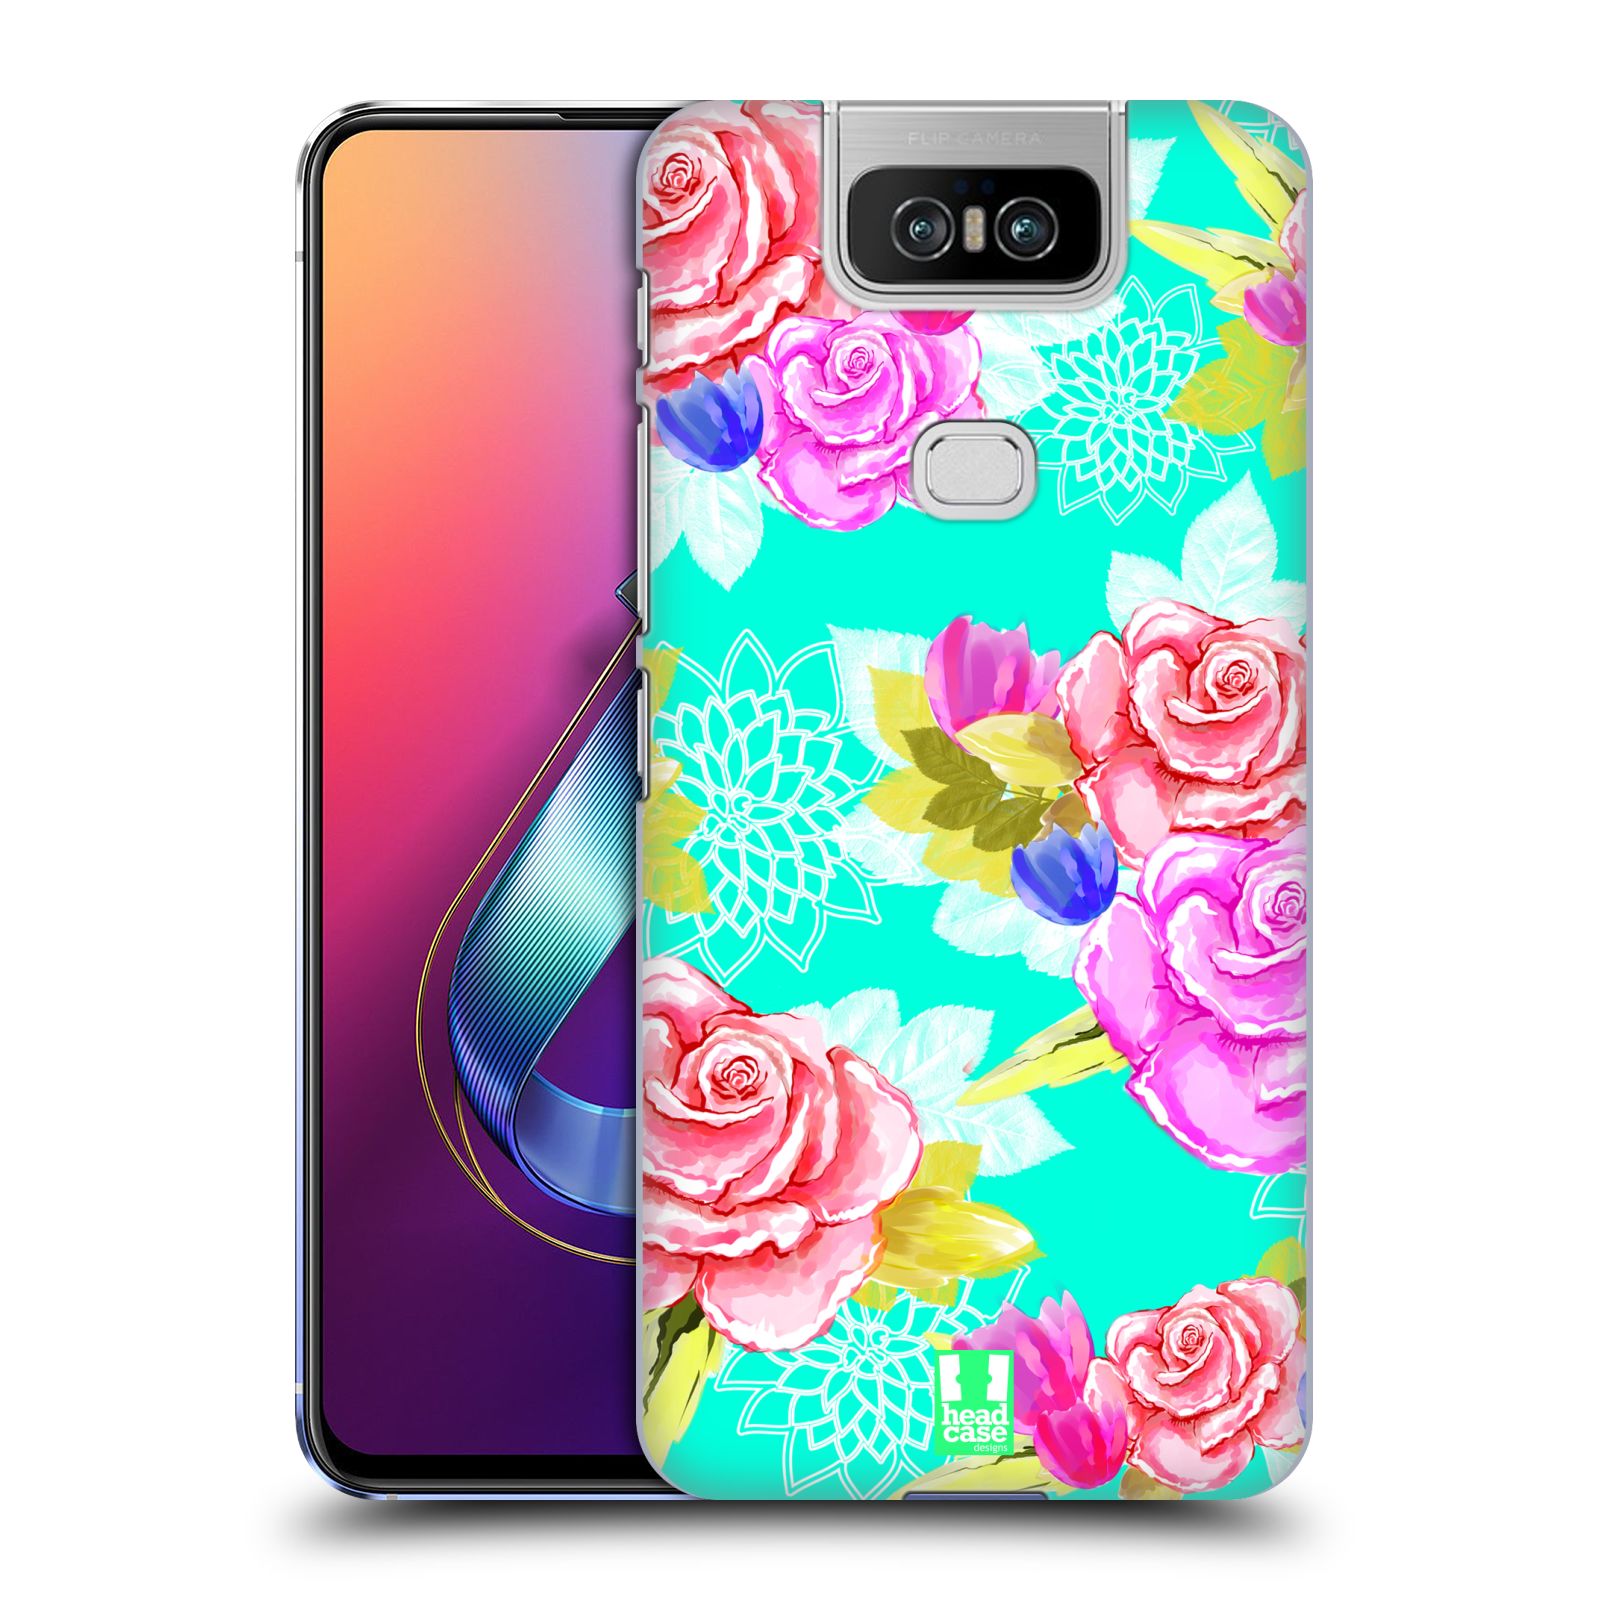 Pouzdro na mobil Asus Zenfone 6 ZS630KL - HEAD CASE - vzor Malované květiny barevné AQUA MODRÁ